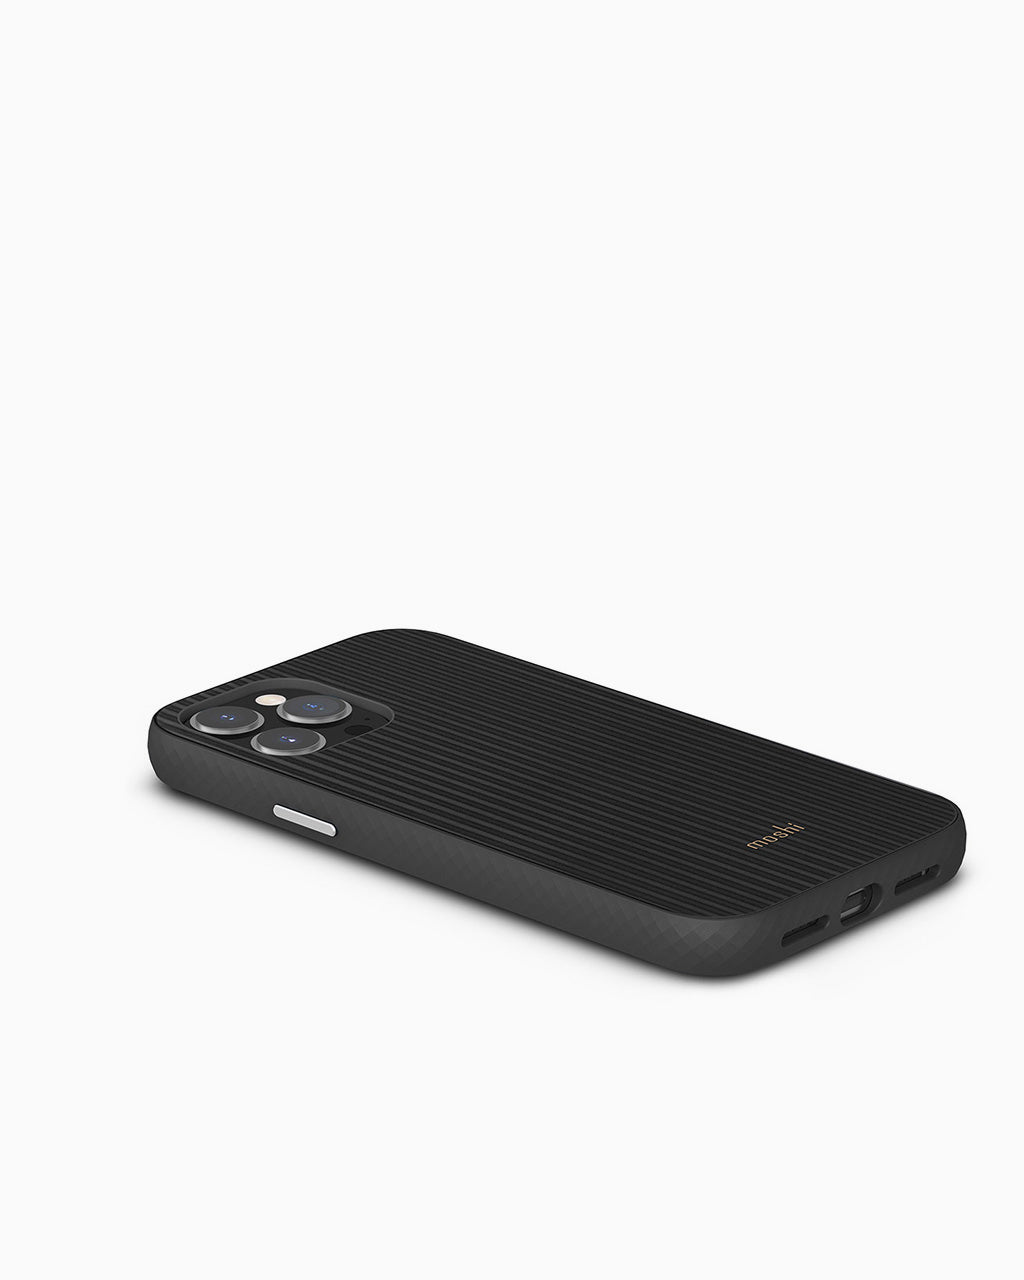 Moshi Arx Slim Hardshell Case for iPhone 13 Pro Max